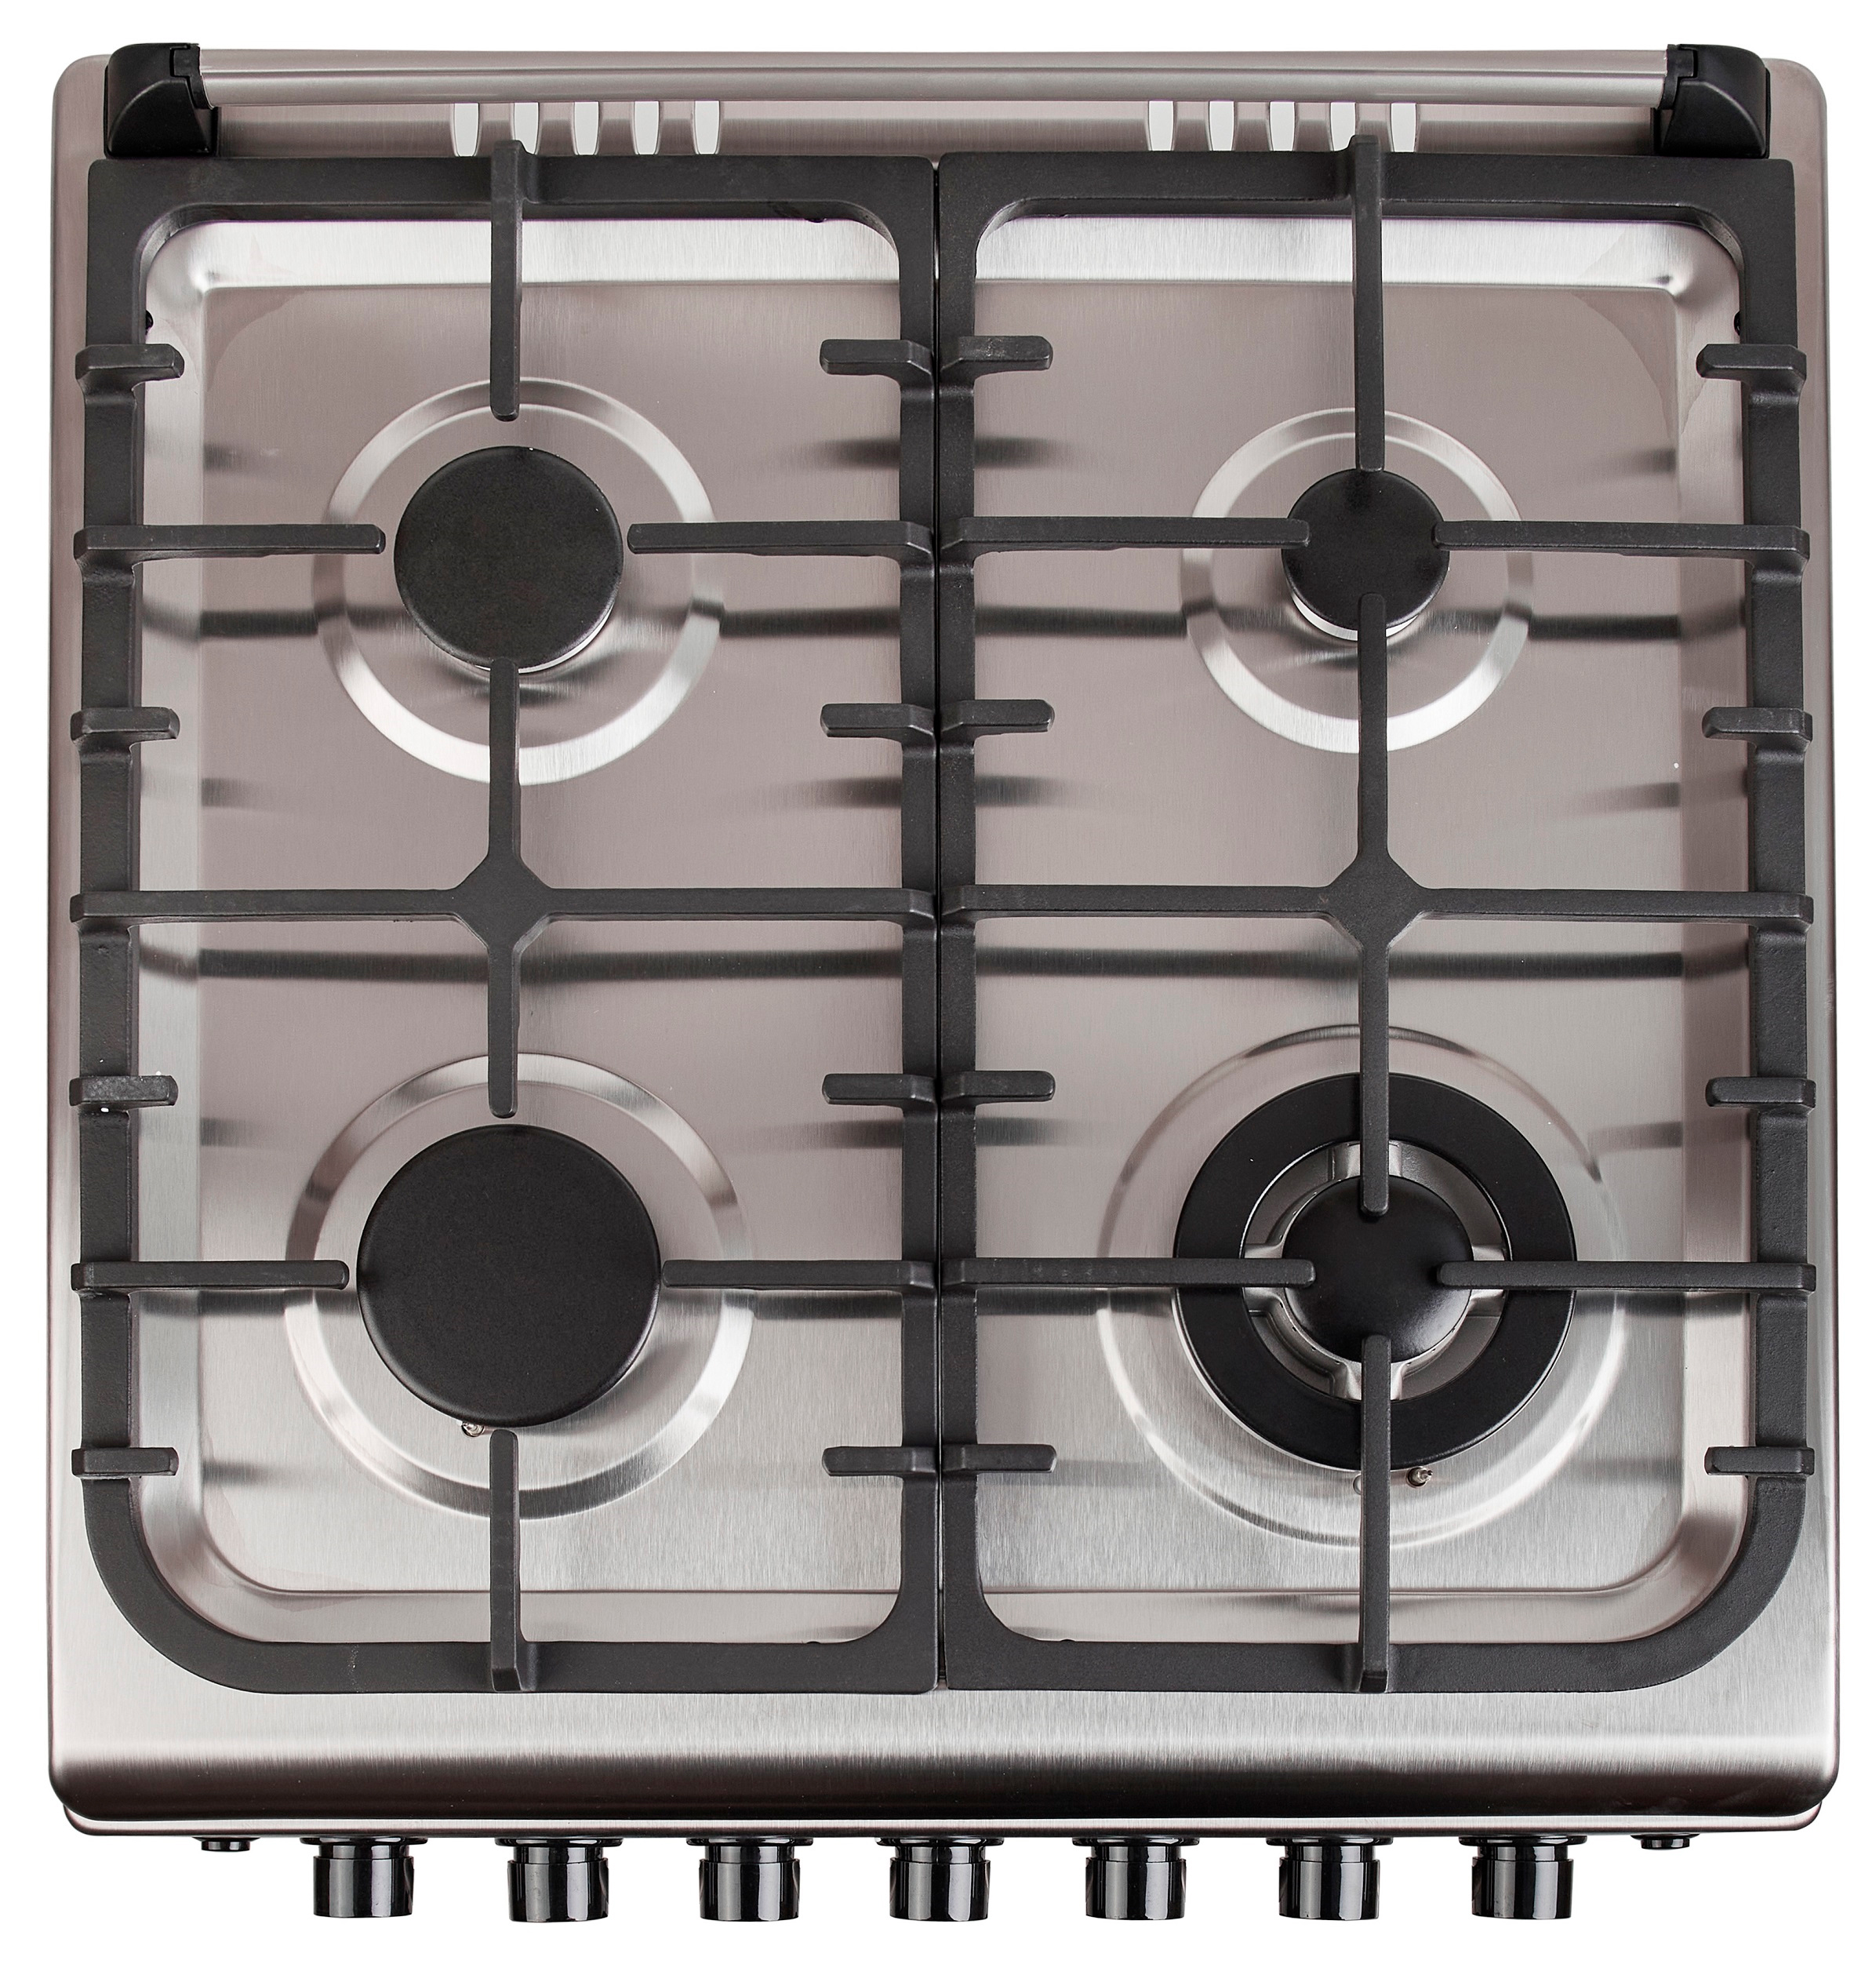 Кухонная плита Fiesta G 6403 SICLtw-SS инструкция - изображение 6